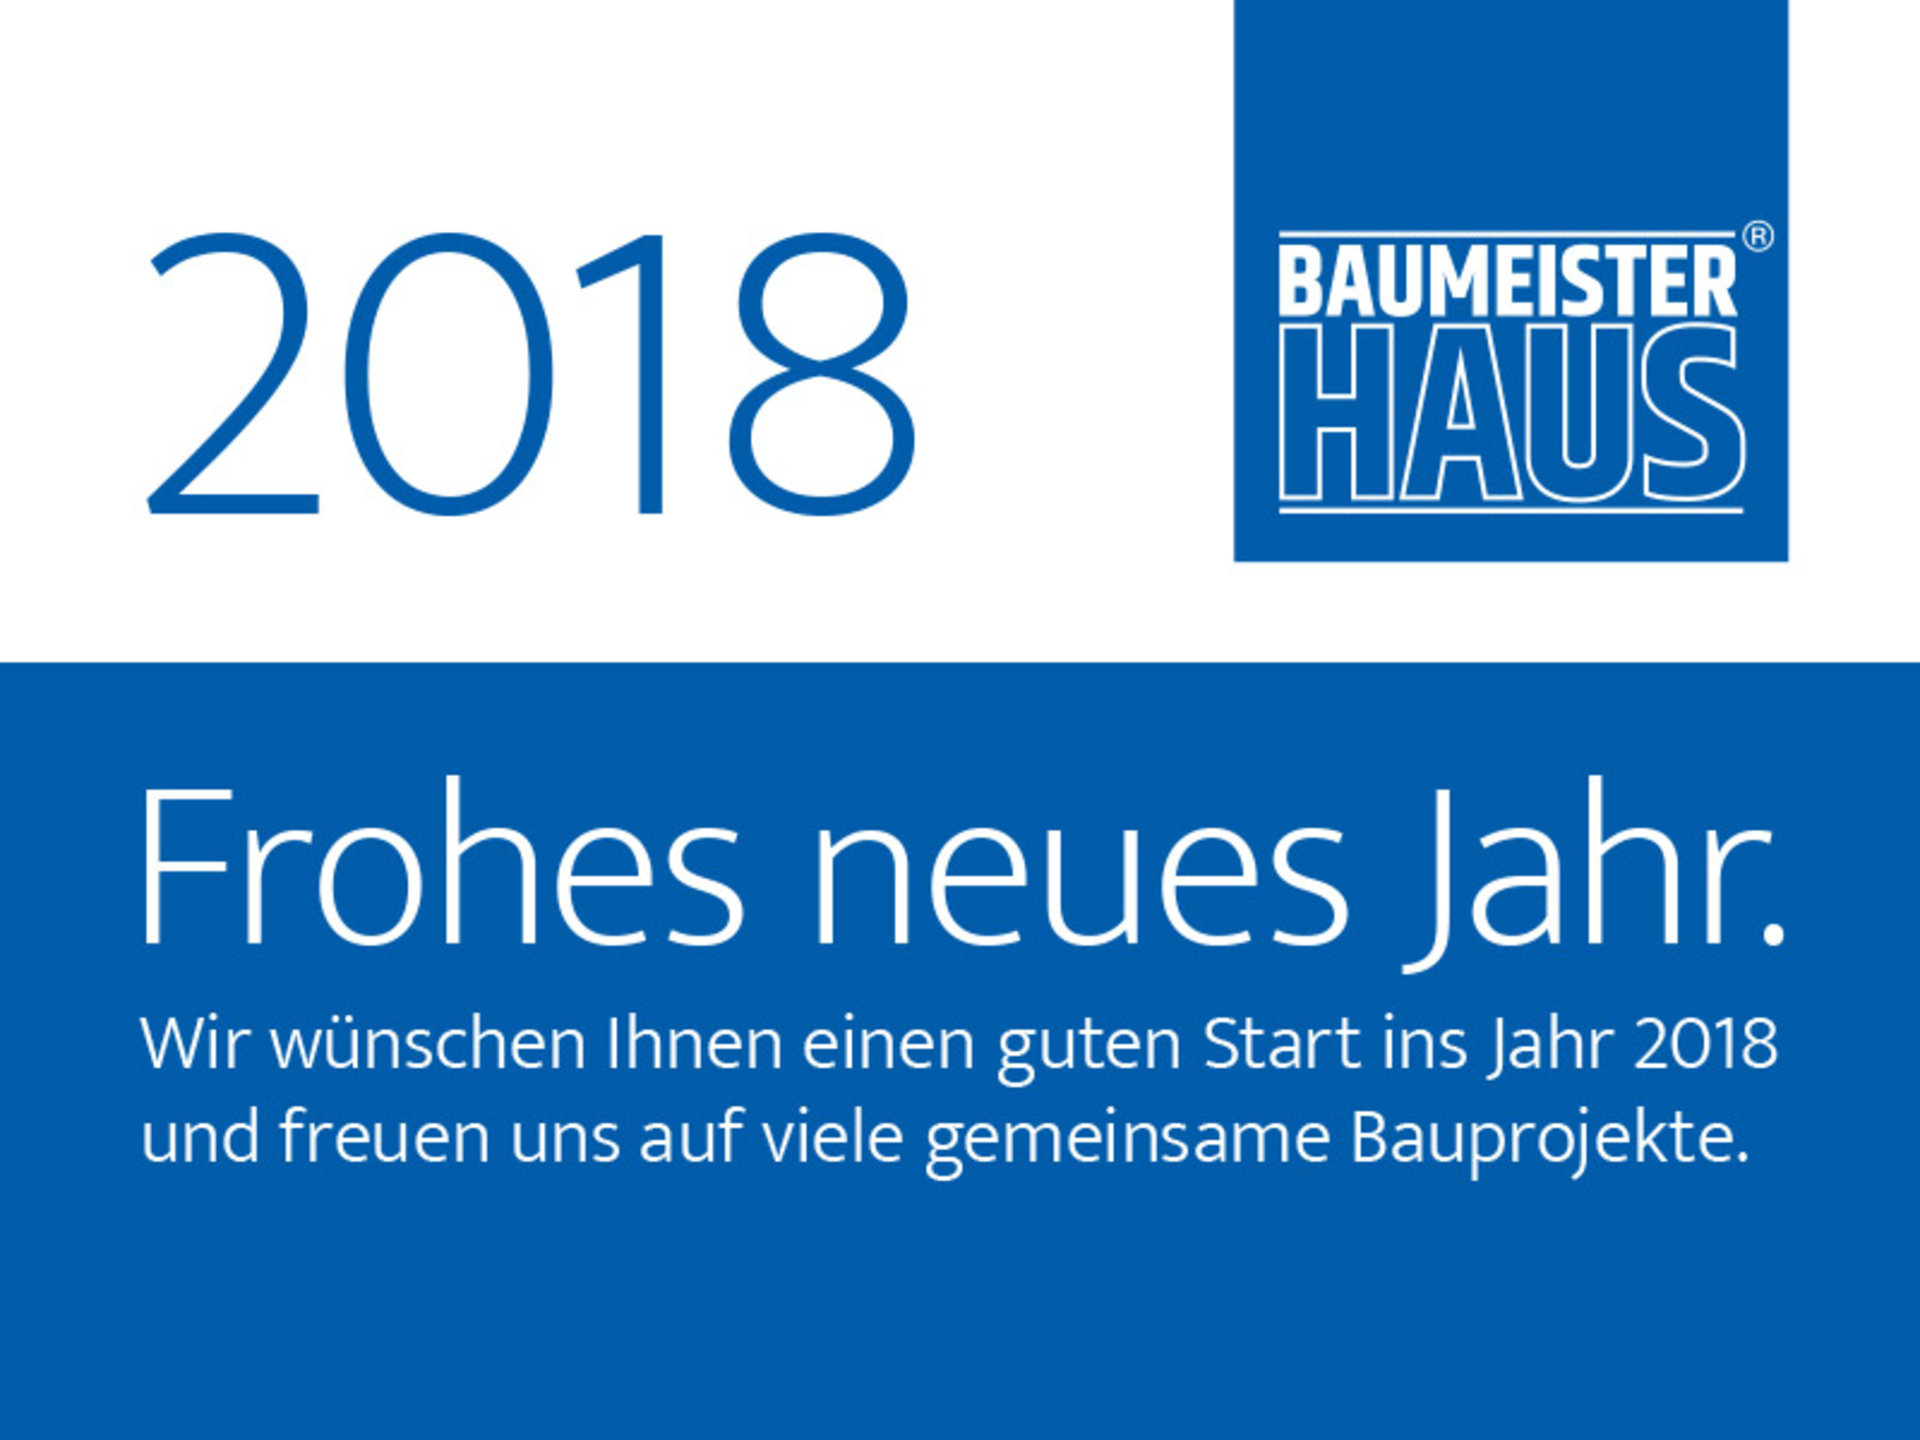 BAUMEISTER-HAUS wünscht allen ein frohes und gesundes Jahr 2018.